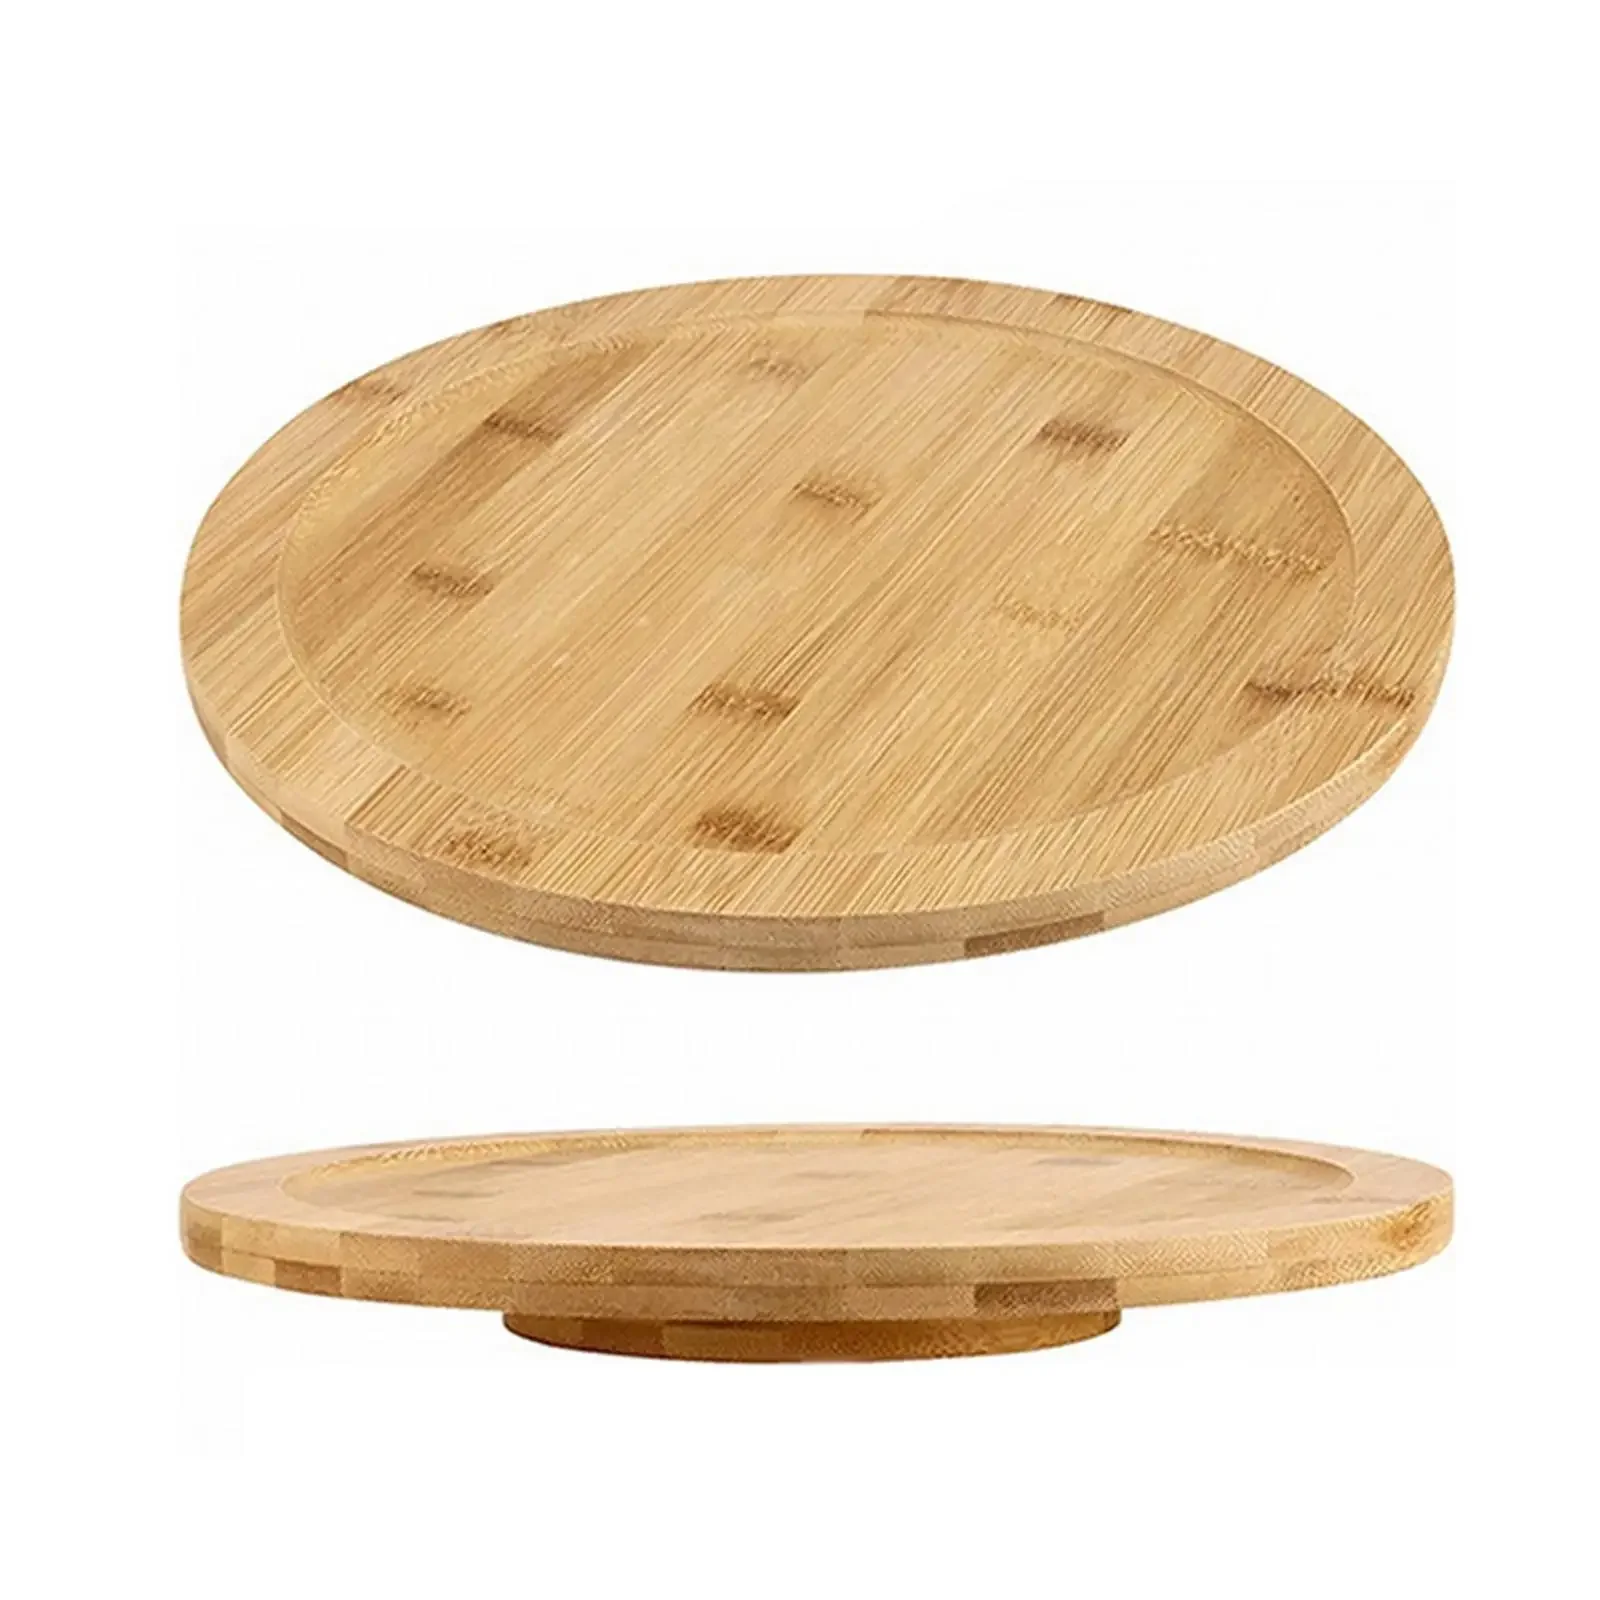 

Вращающийся деревянный поднос, вращающаяся доска, поворотная тарелка, Сервировочная тарелка для пиццы, Сервировочная тарелка для дома, кладовой, обеденного стола, шкафа, кухни